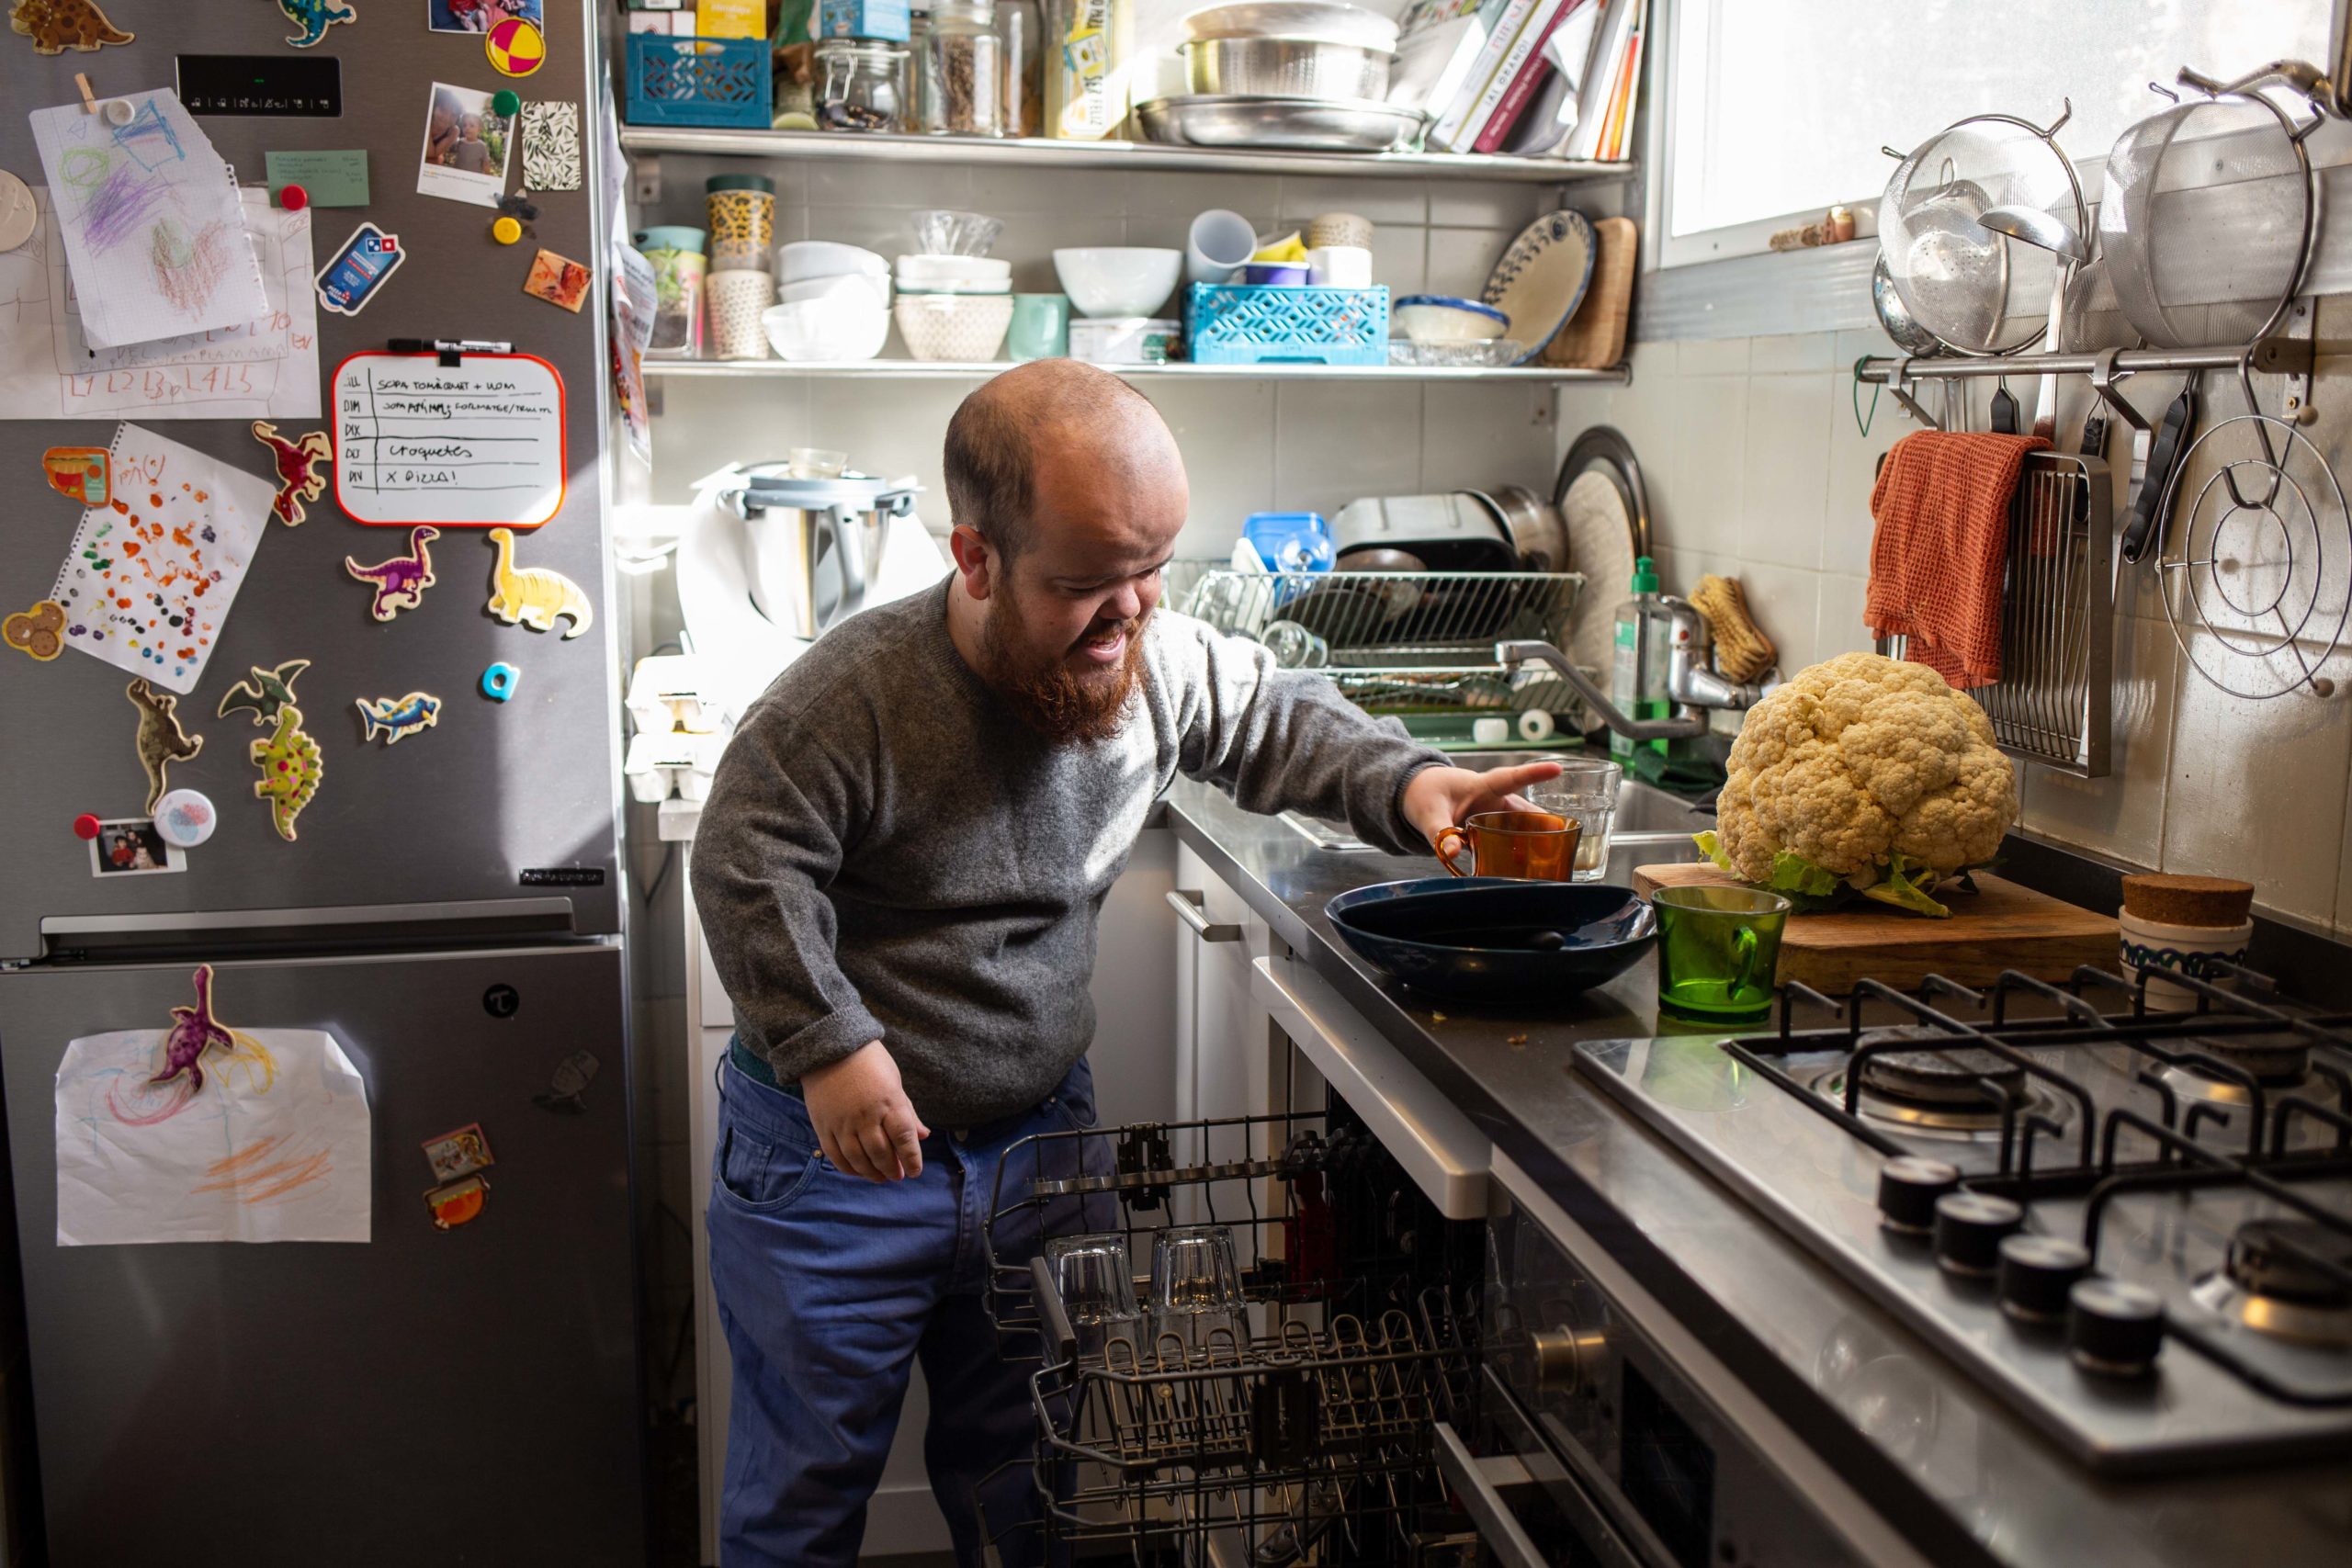 Un noi posa els plats dins del rentavaixelles a la cuina